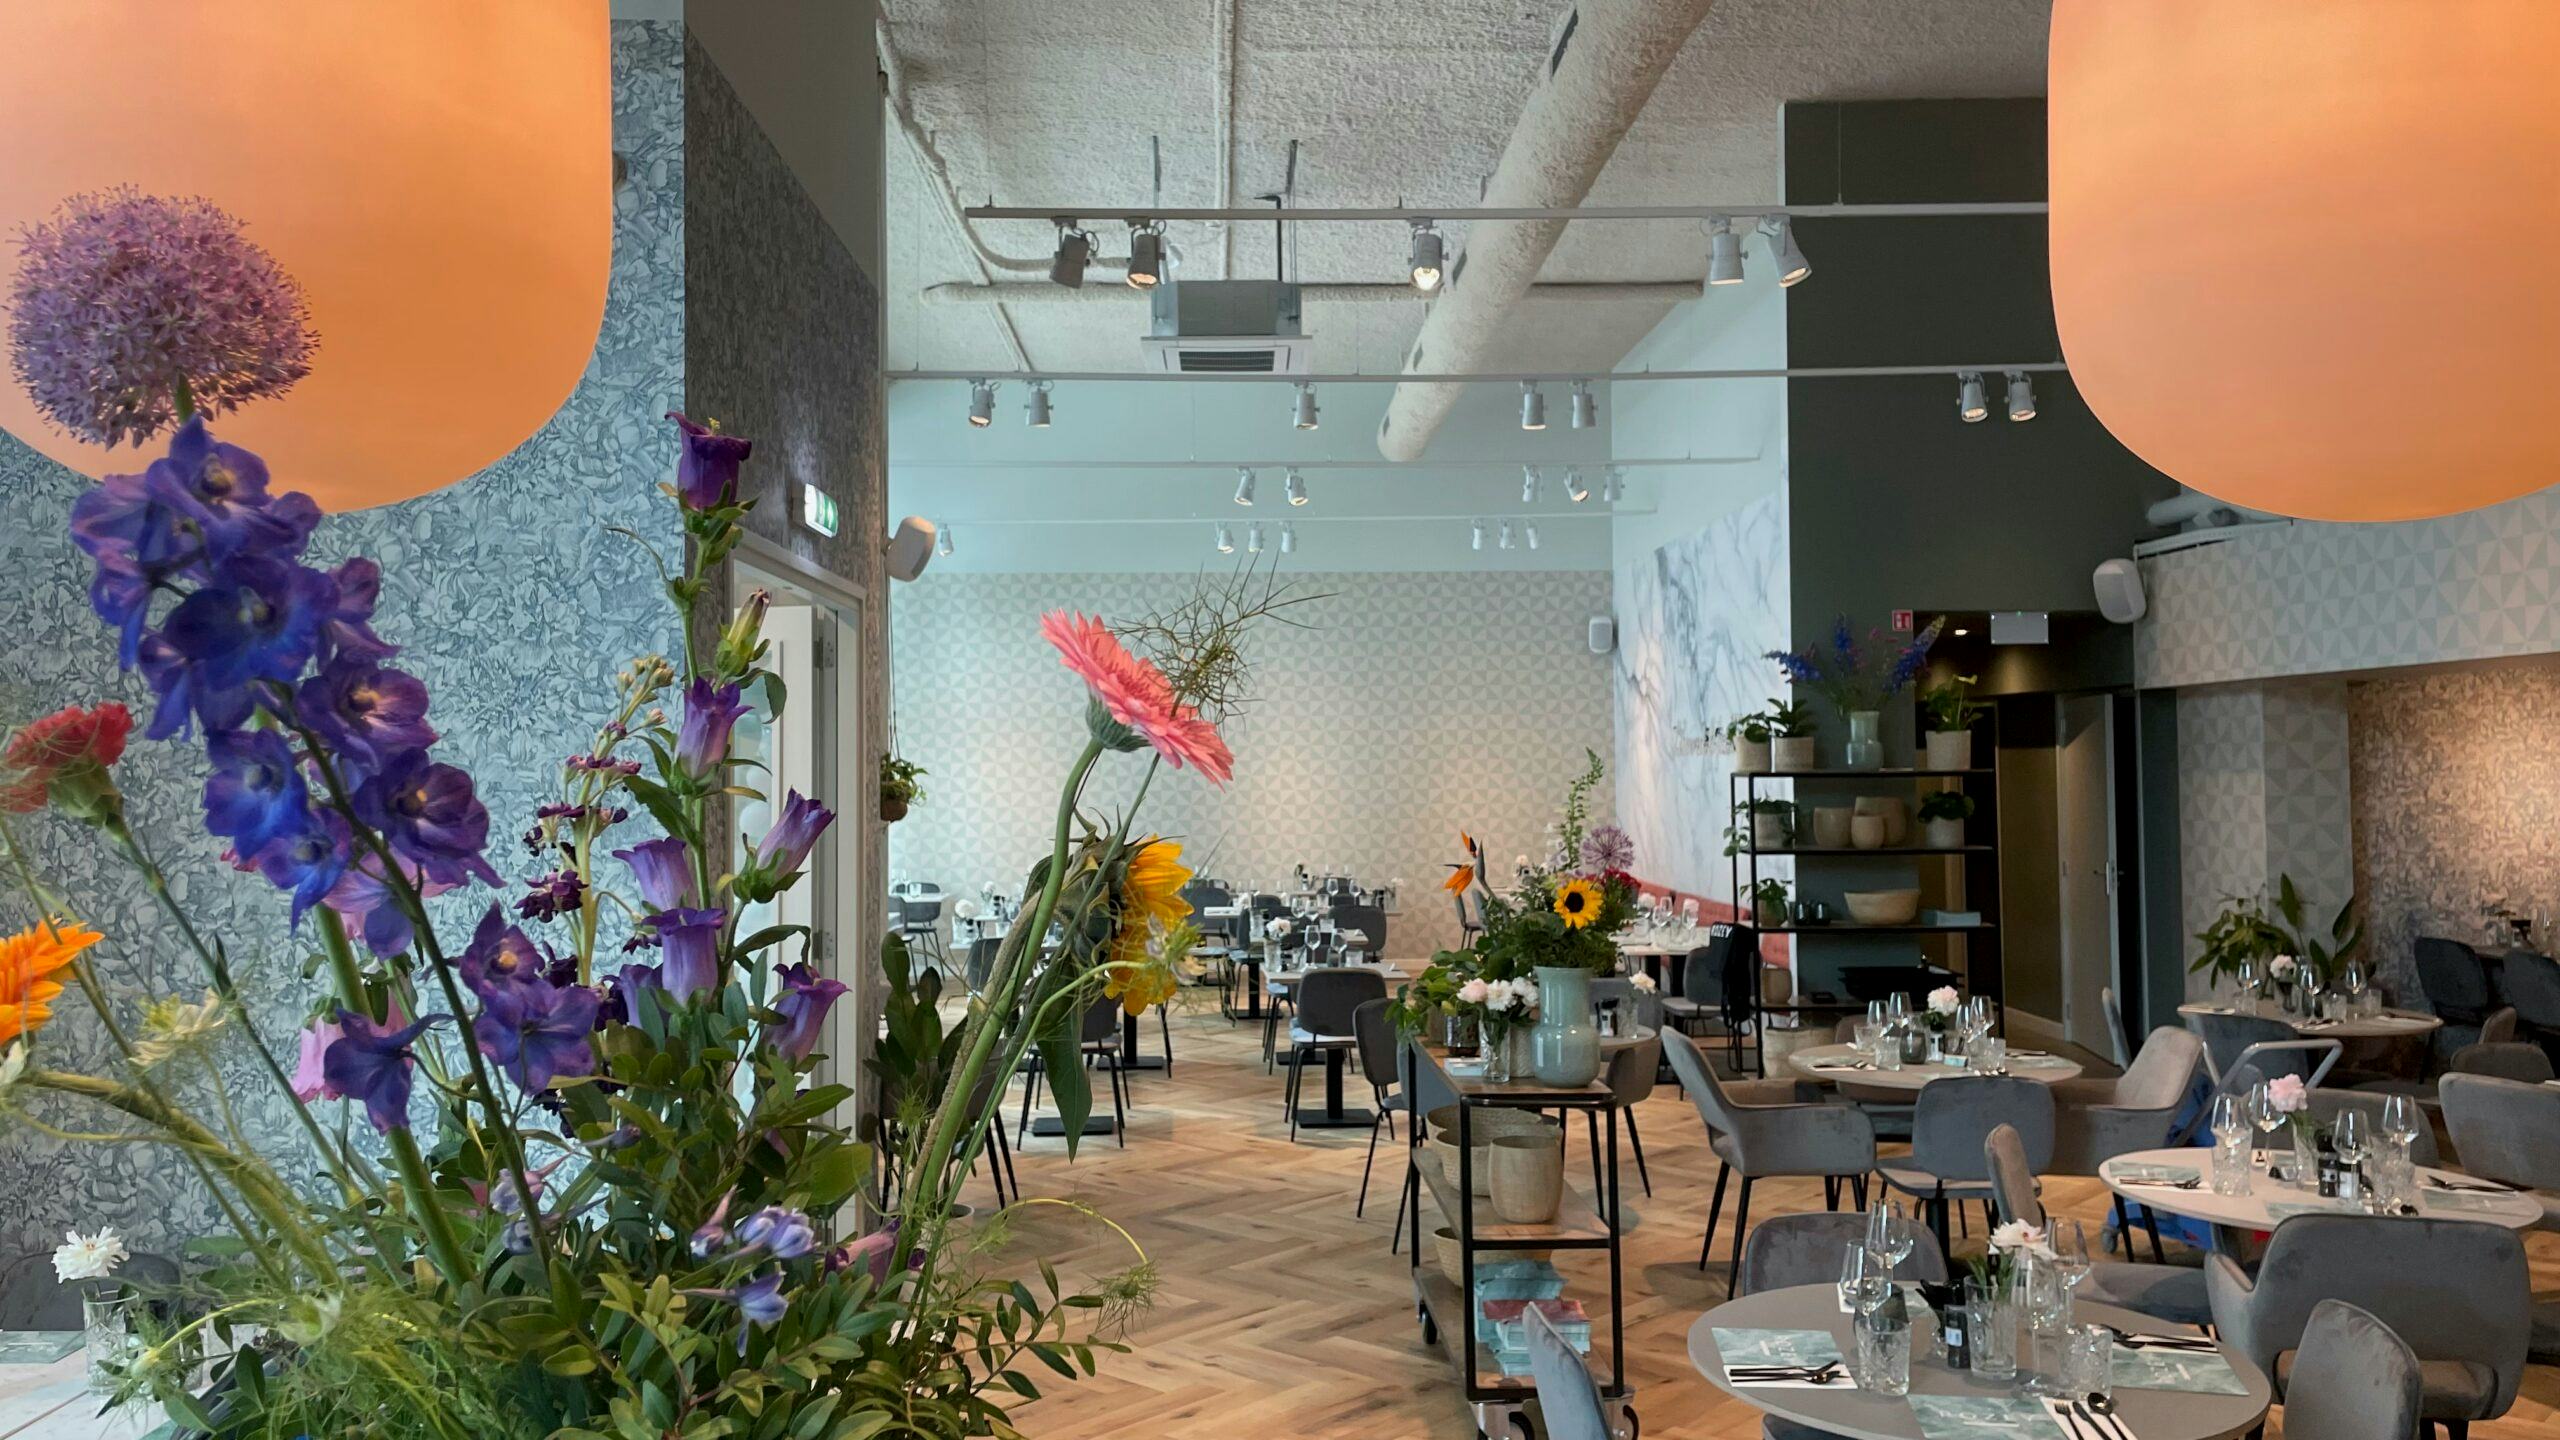 Vegarestaurant Rozey opent nieuwste vestiging in Den Haag